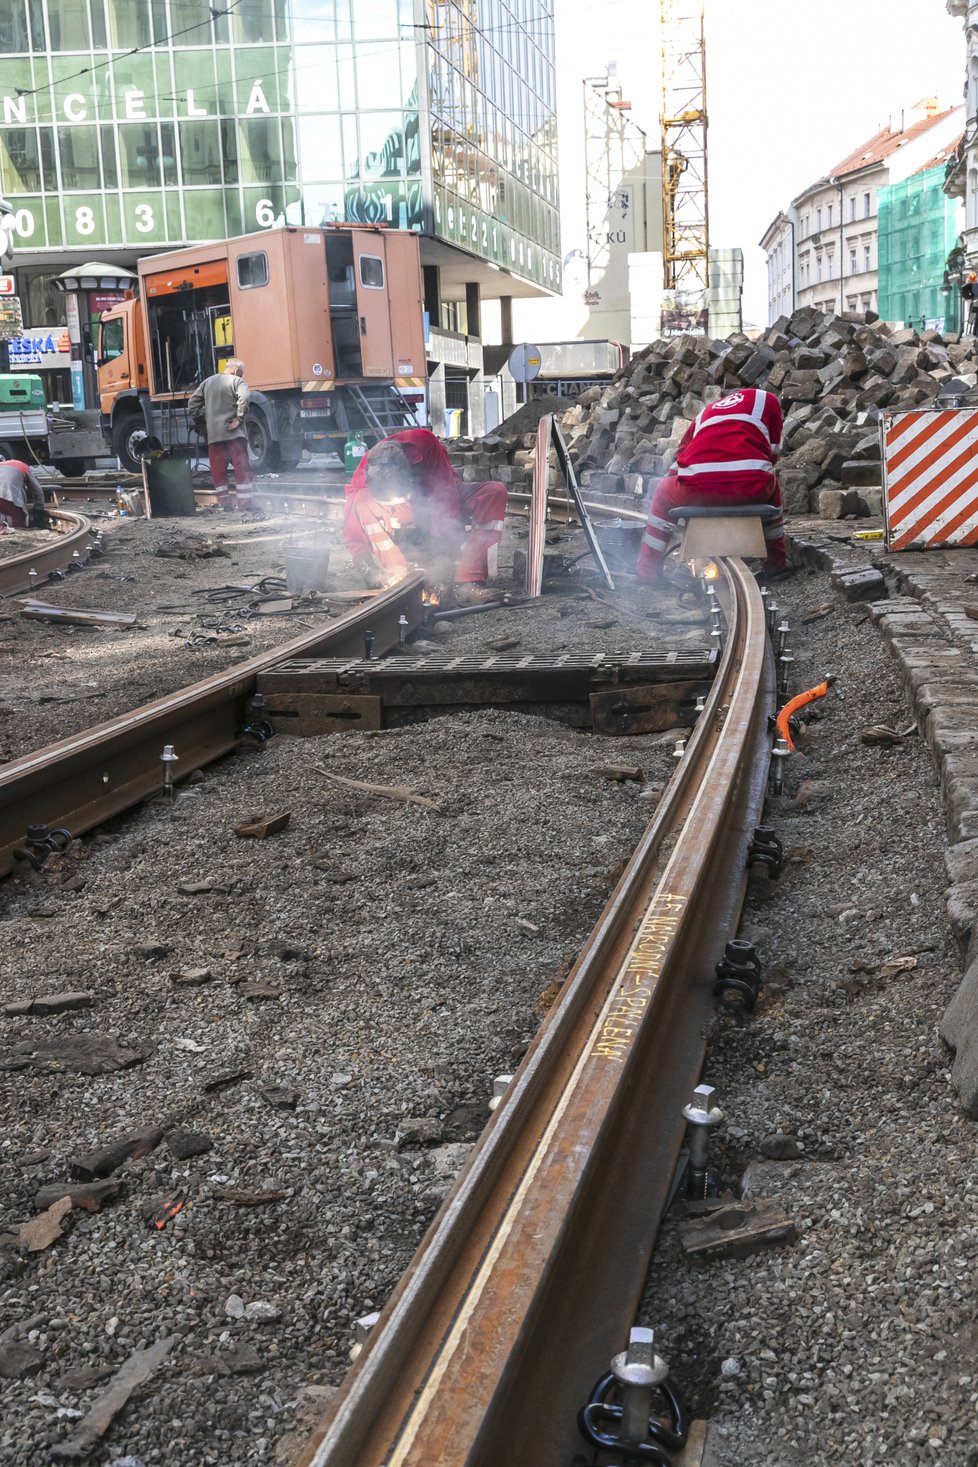 Výluka navazuje na opravy trati na křižovatce ulic Lazarská a Spálená, kdy nejezdí od pondělí 29. října do 8. listopadu tramvaje v části Spálené navazující na Karlovo náměstí.